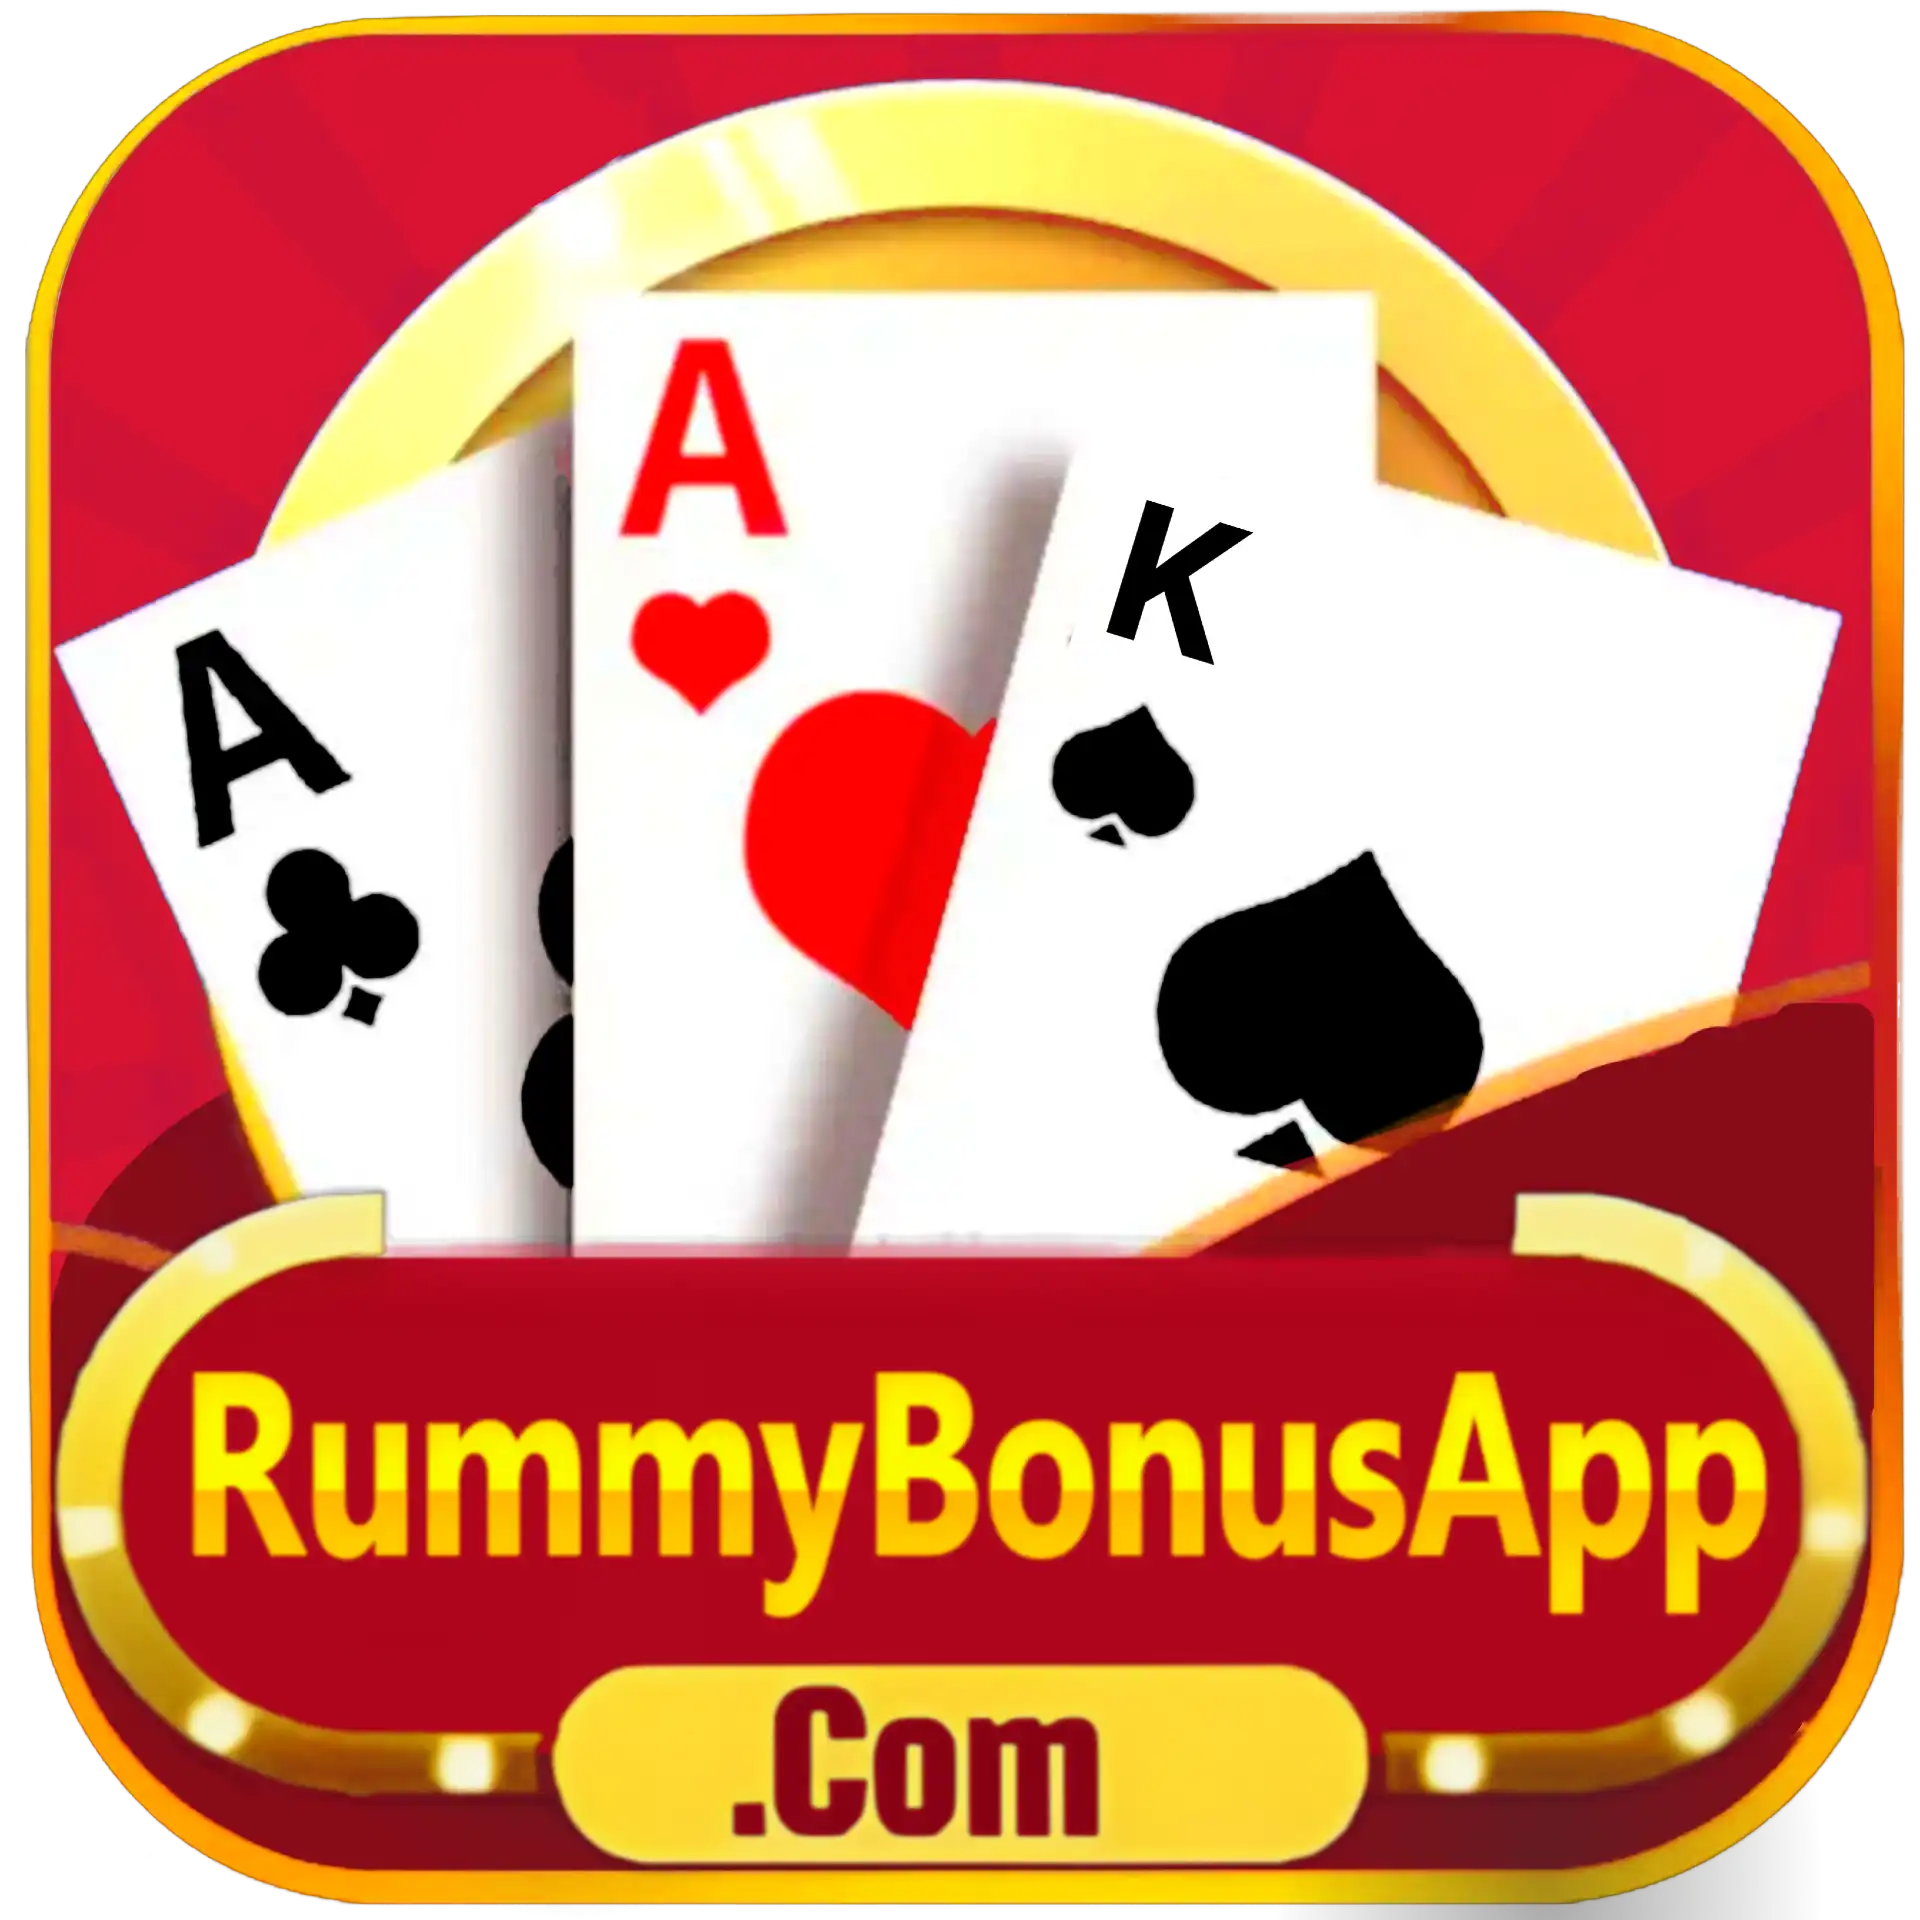 All Rummy Apps - All Rummy App - RummyBonusApp